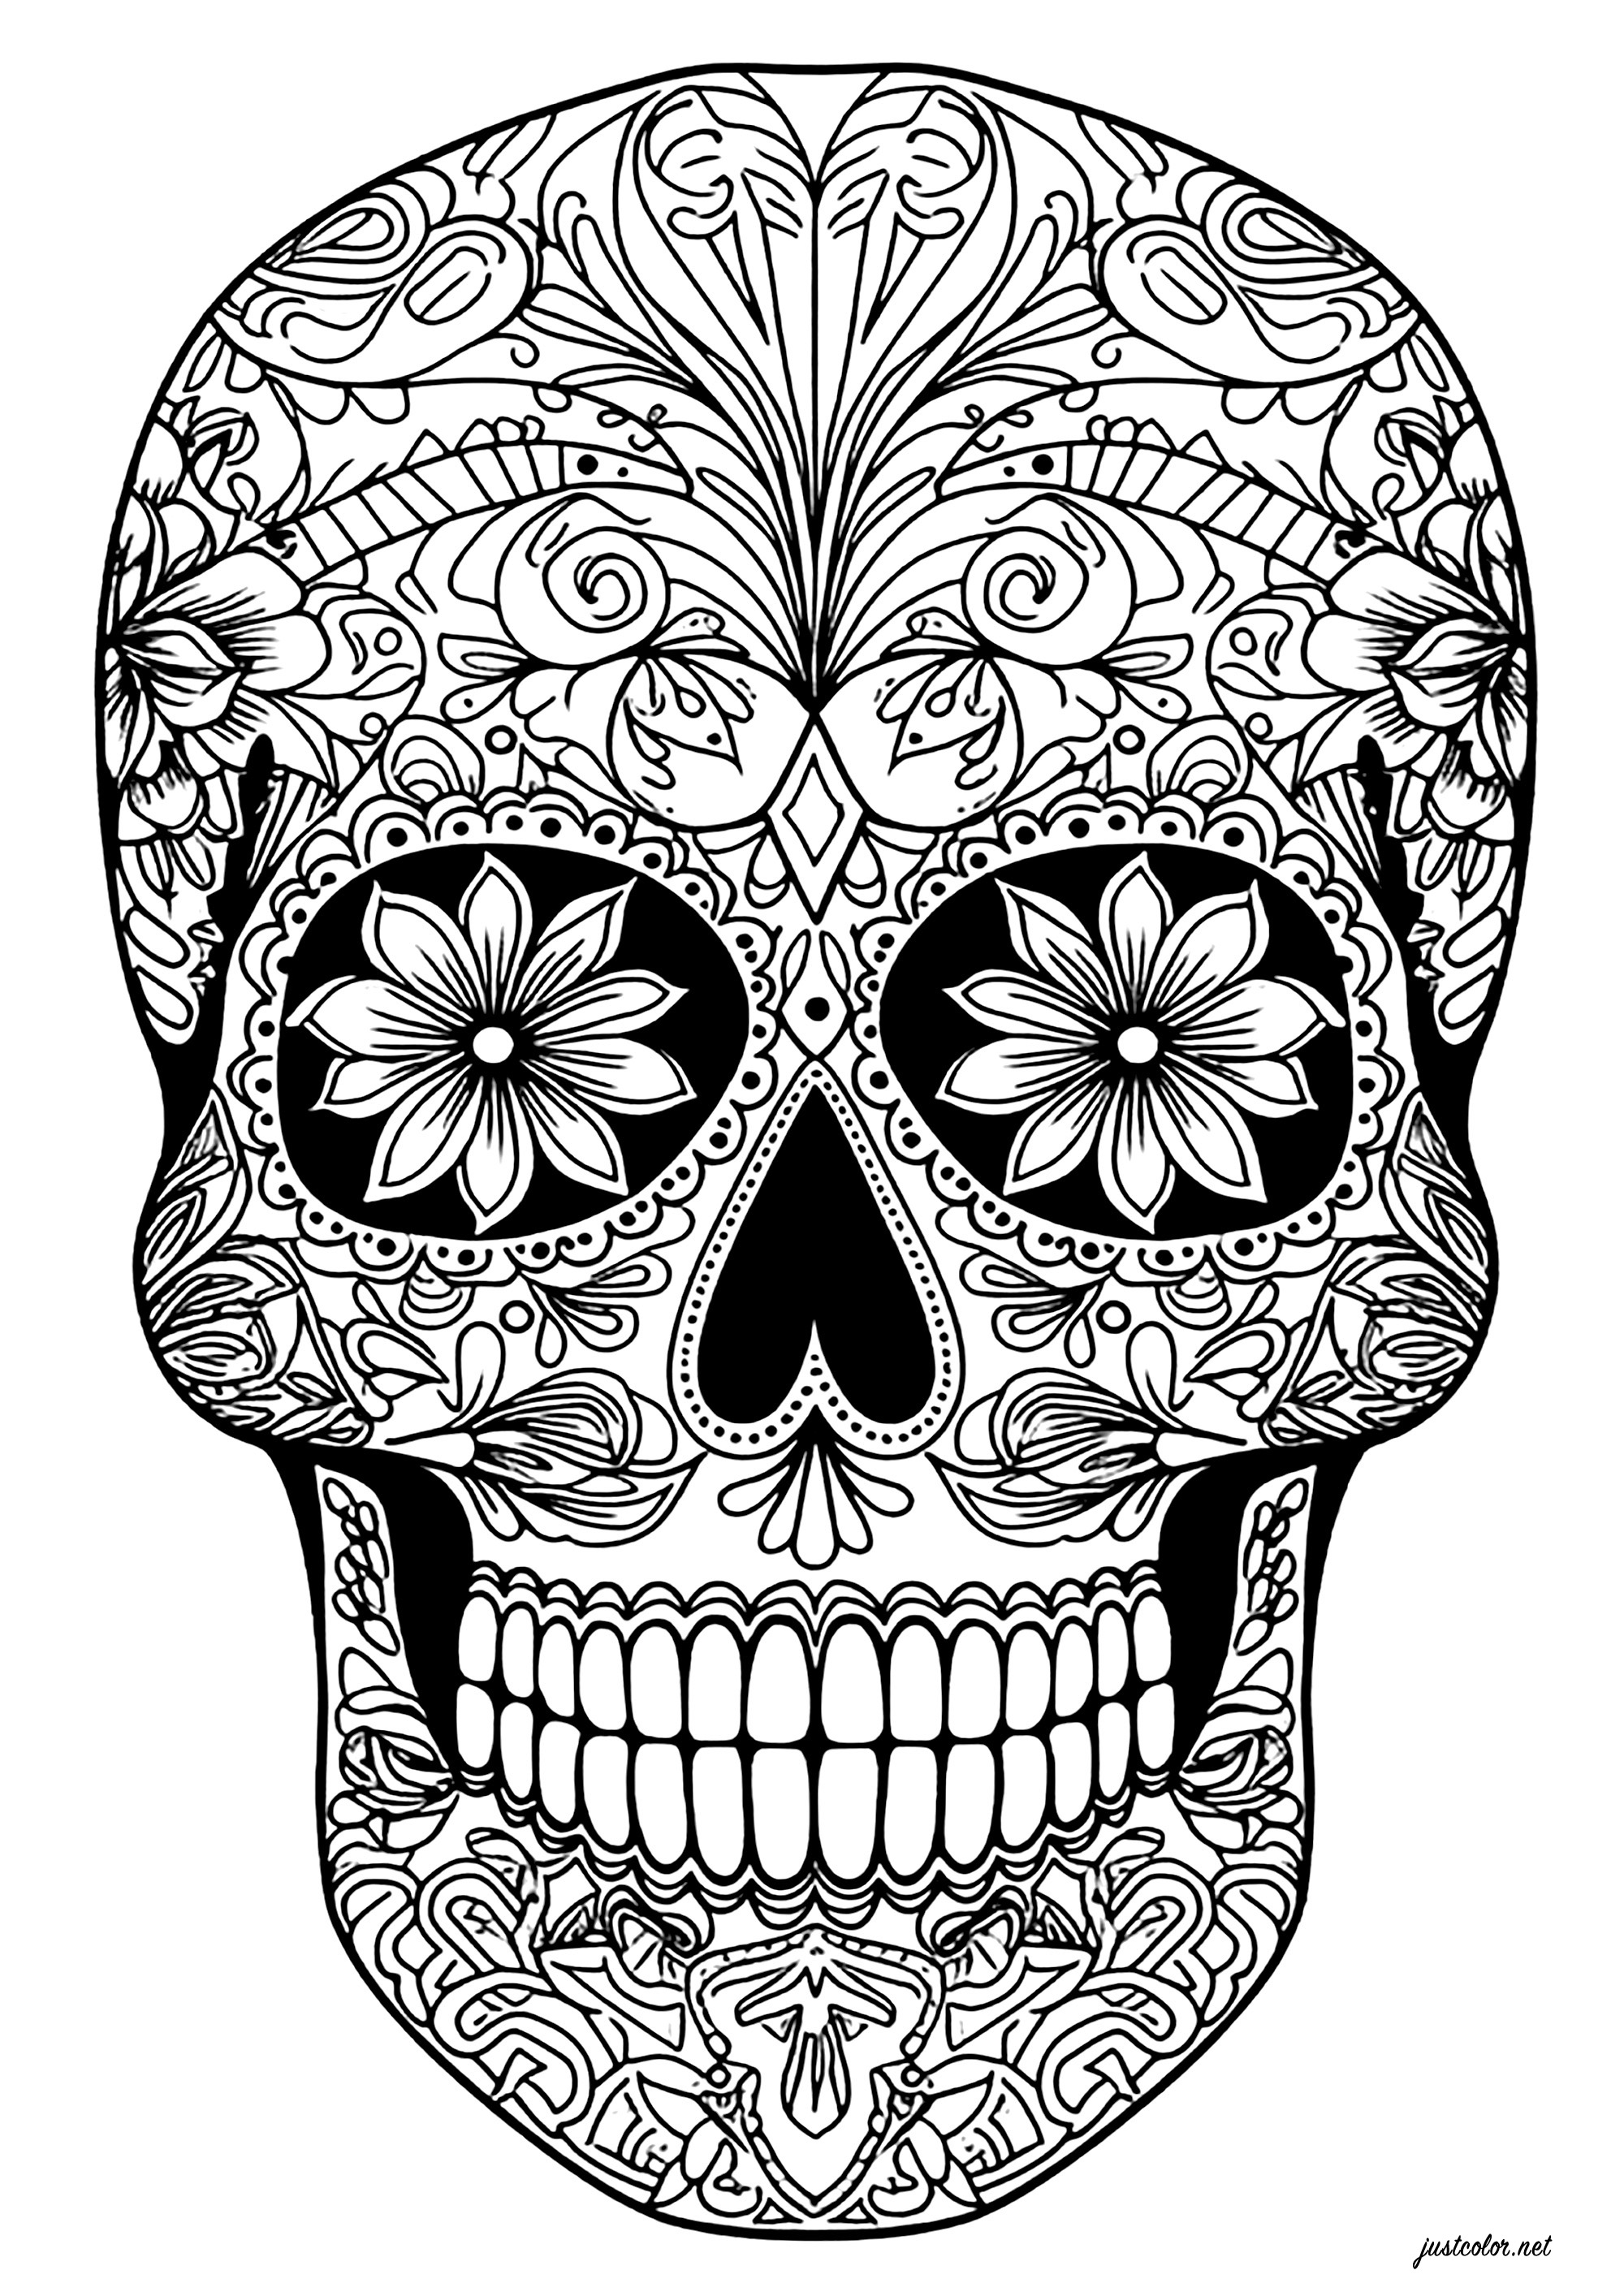 Día de los muertos skull intricate, elegant designs El Día de los